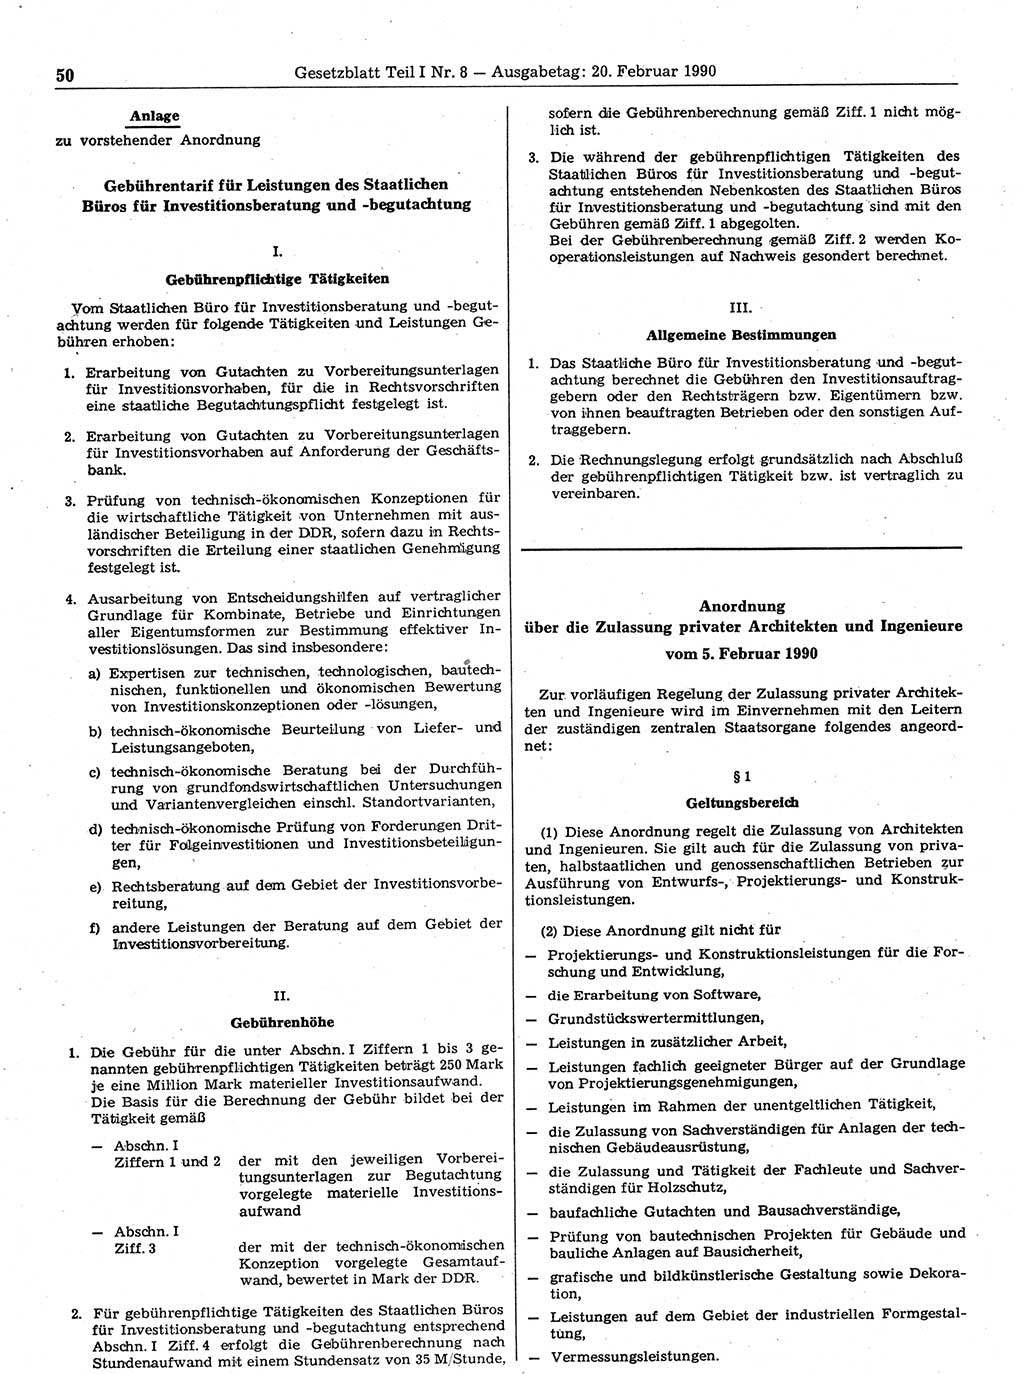 Gesetzblatt (GBl.) der Deutschen Demokratischen Republik (DDR) Teil Ⅰ 1990, Seite 50 (GBl. DDR Ⅰ 1990, S. 50)